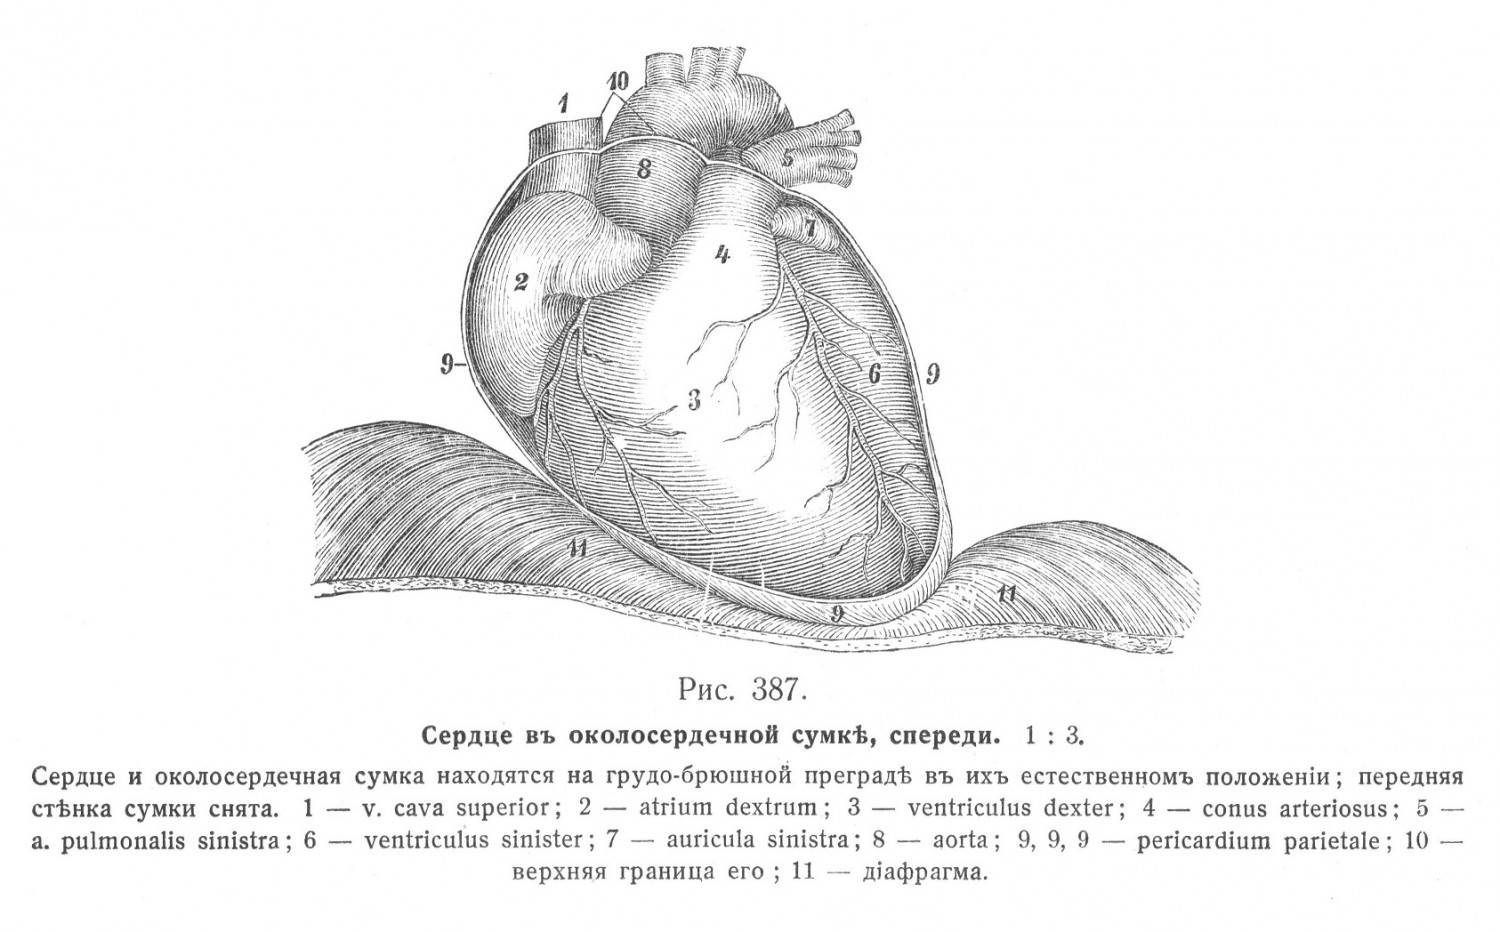 Сердце в околосердечной сумке, спереди